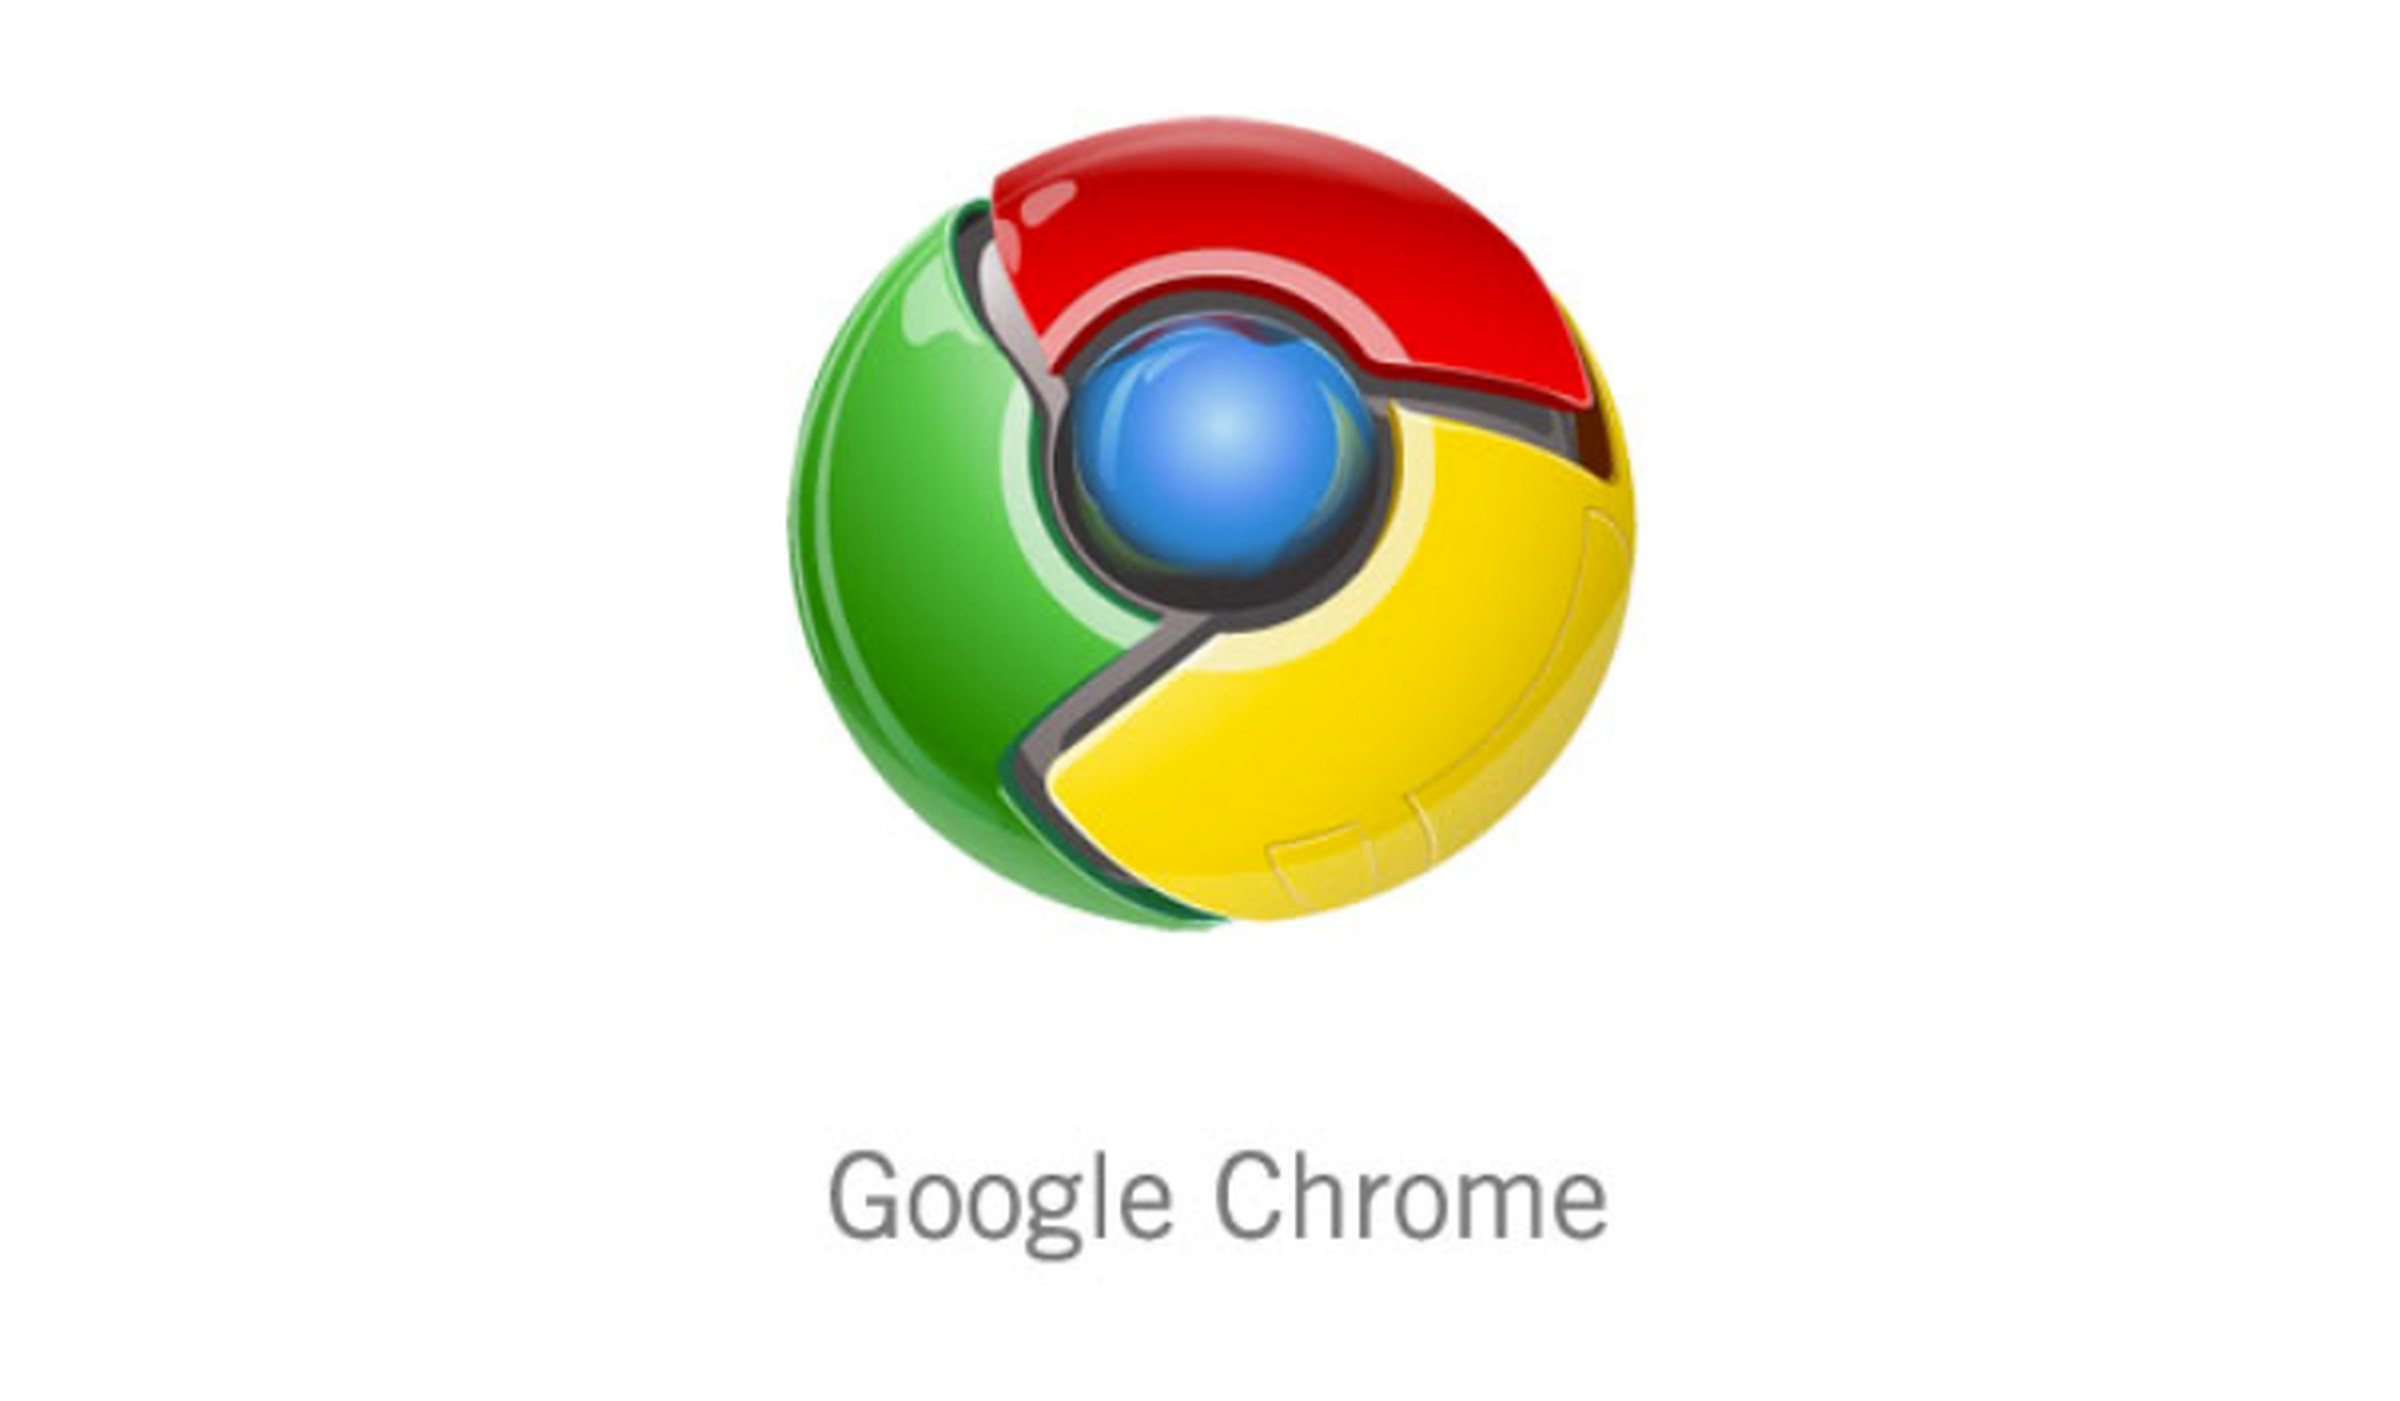 Original Chrome logo